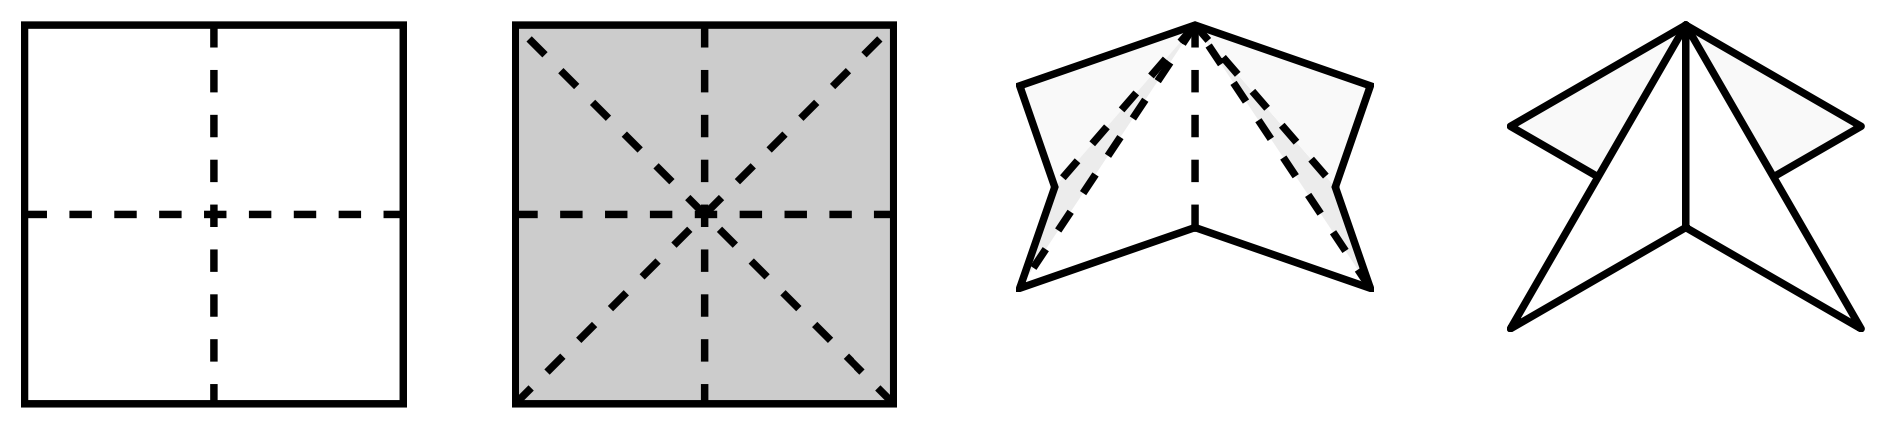 Faltung für einen Oktaeder (Etzold & Petzschler, 2014, S. 64)